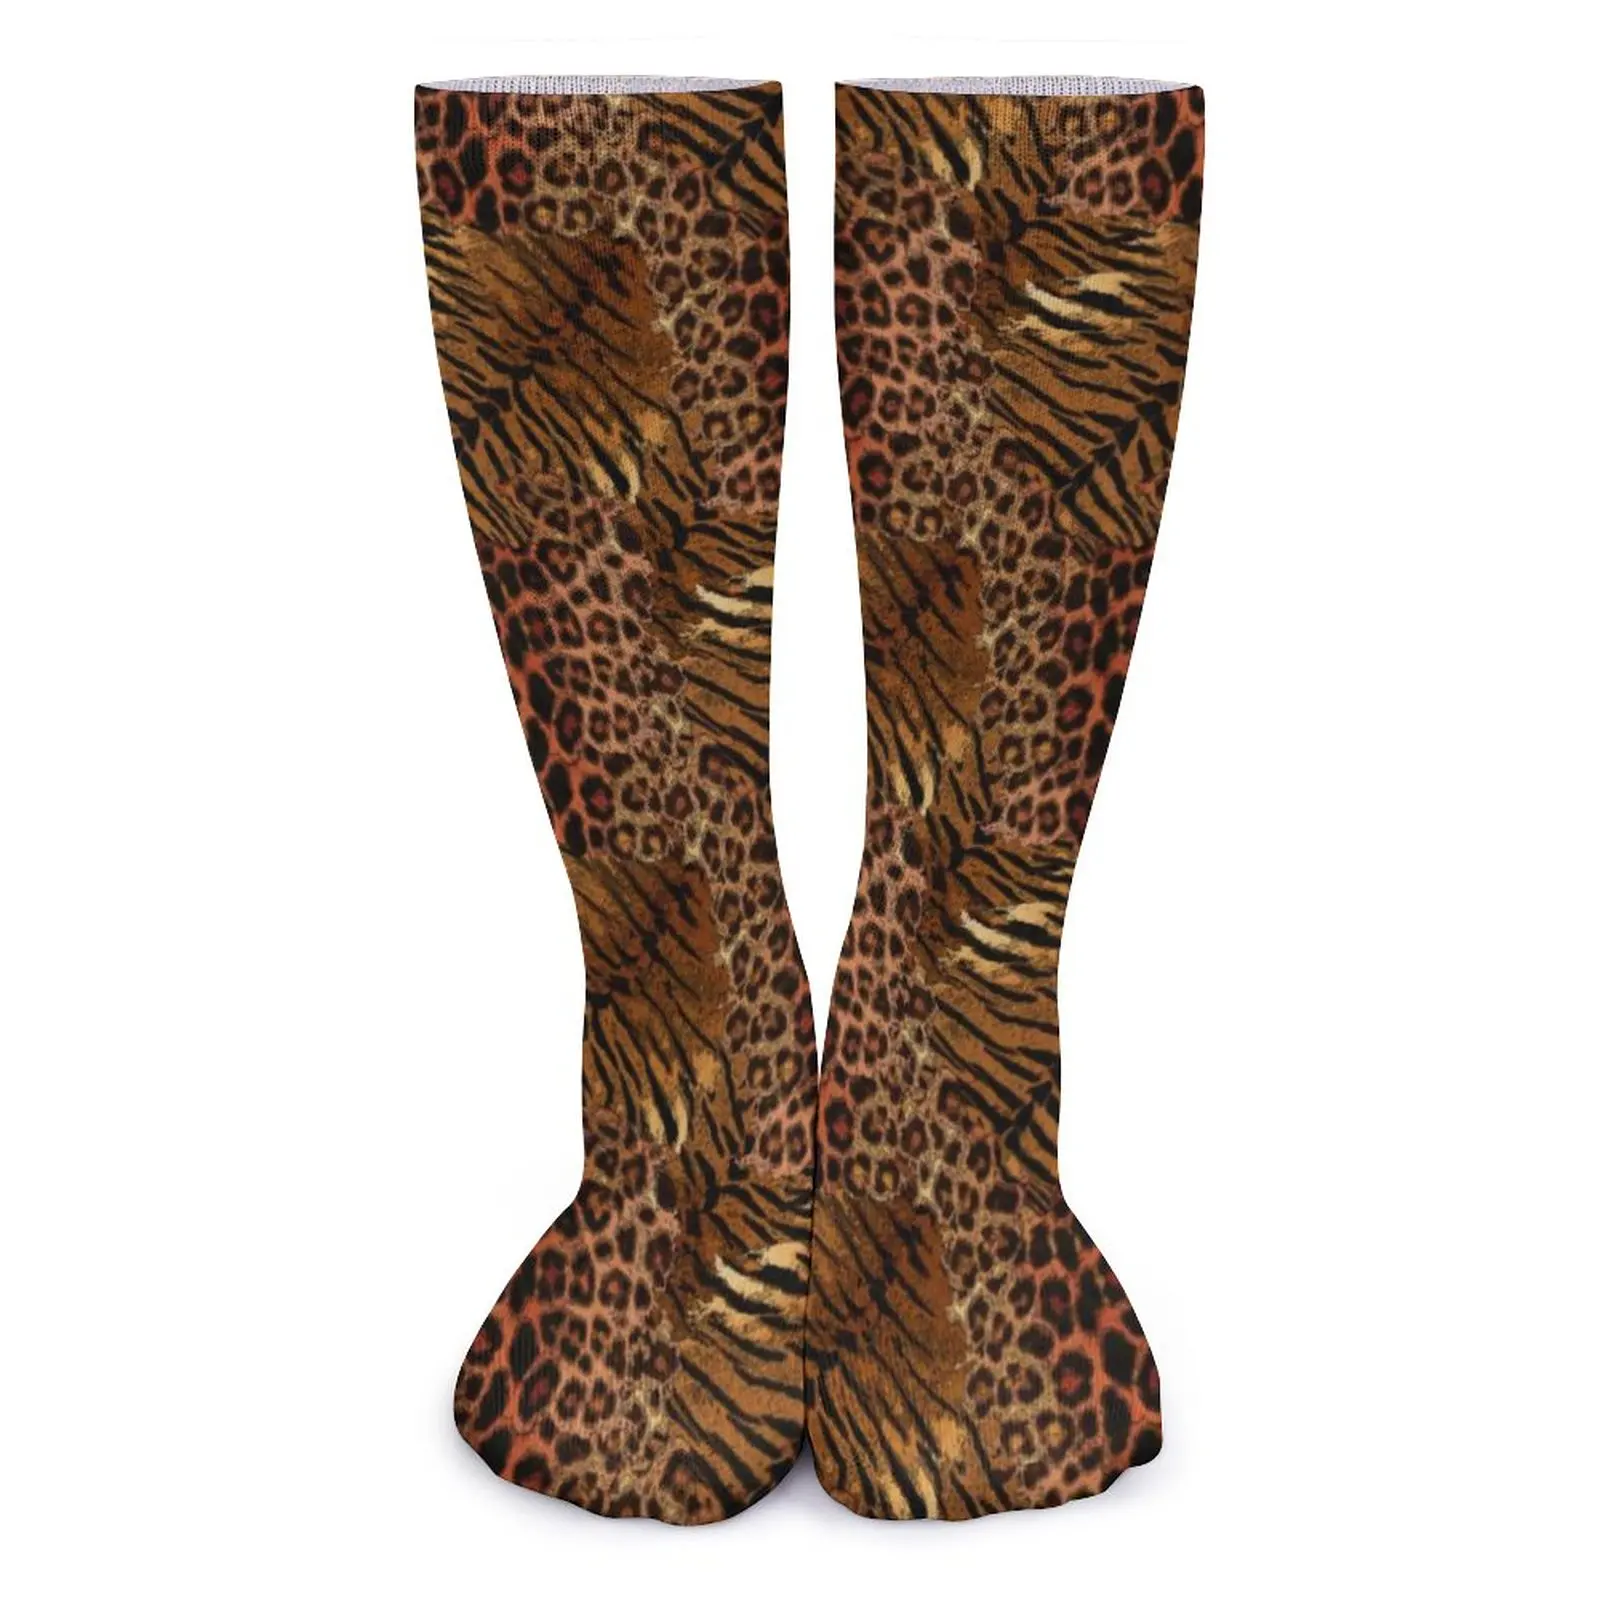 

Леопардовые чулки из кожи тигра женские модные носки с пятнистым котом в полоску мягкие модные носки нескользящие дизайнерские носки для скейтборда подарок